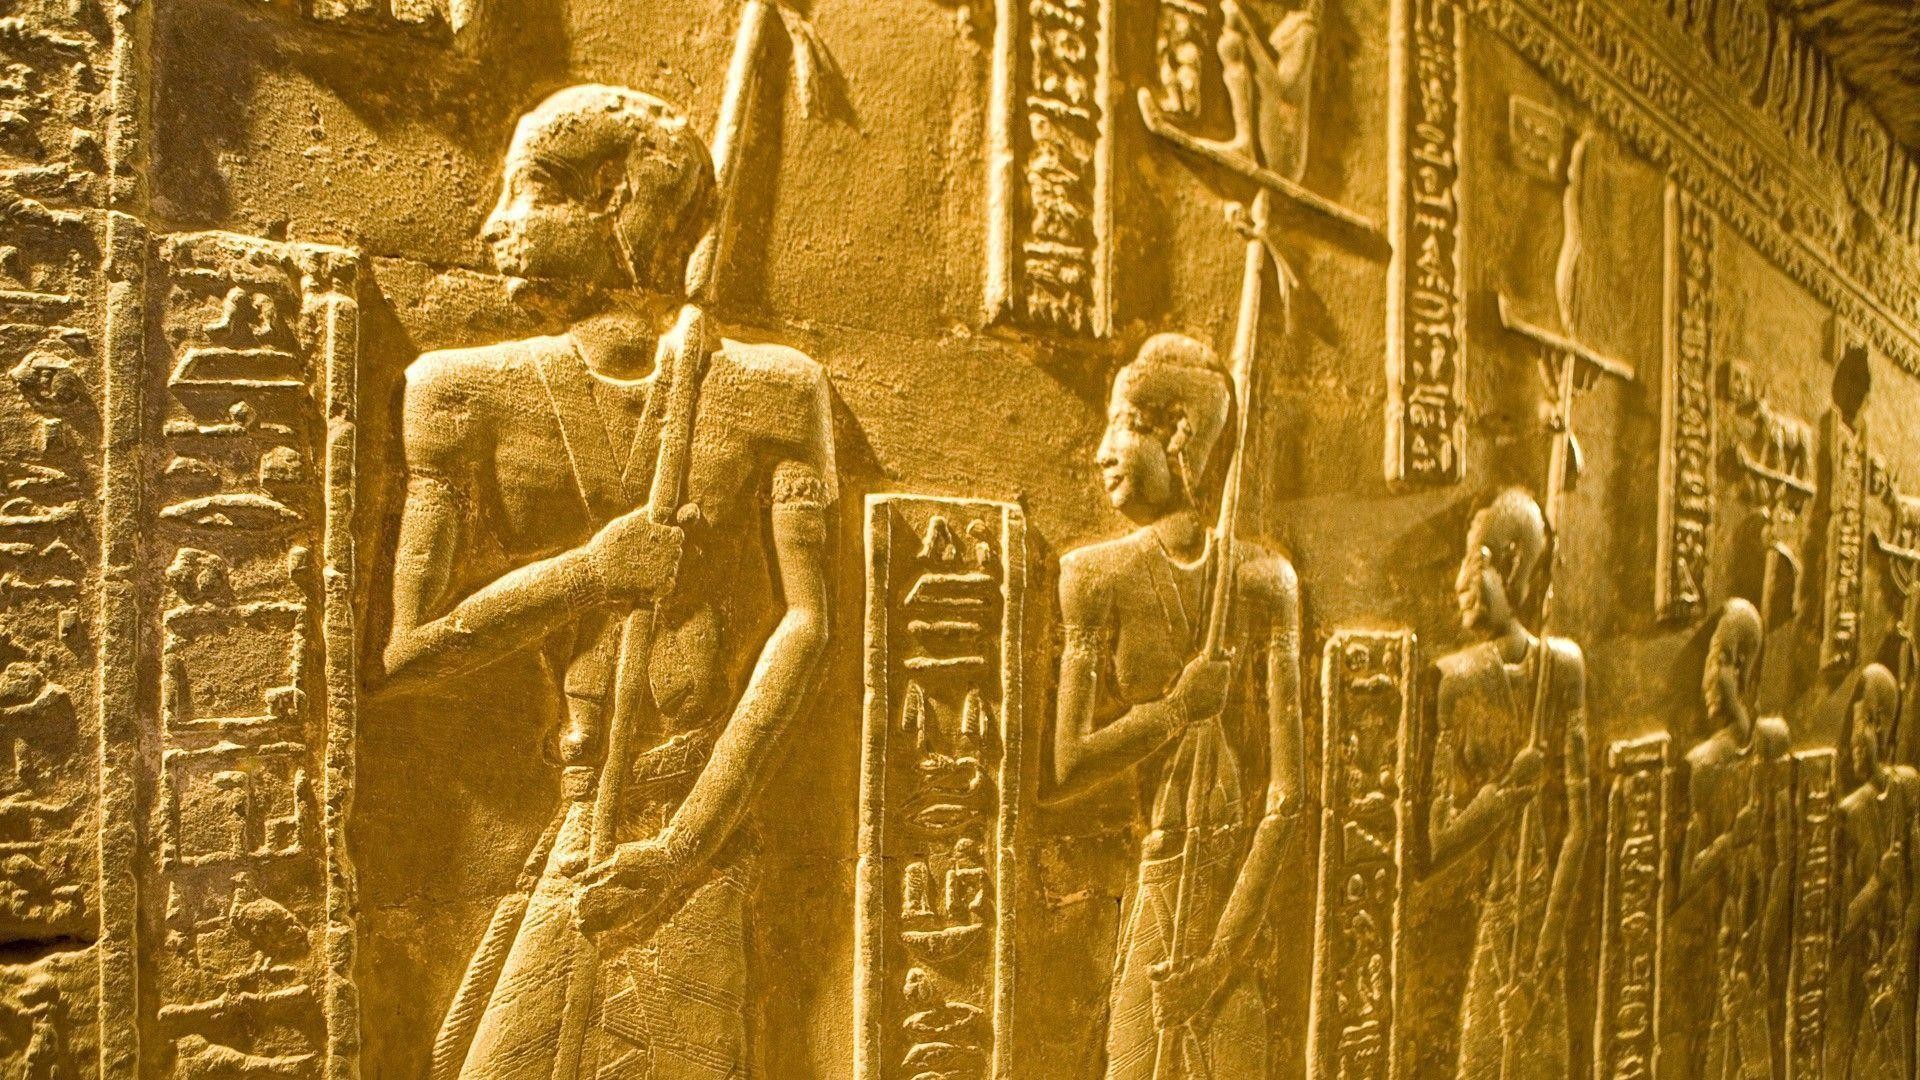 1920x1080 Egyptian Hieroglyphics Wallpaper | Modern Design